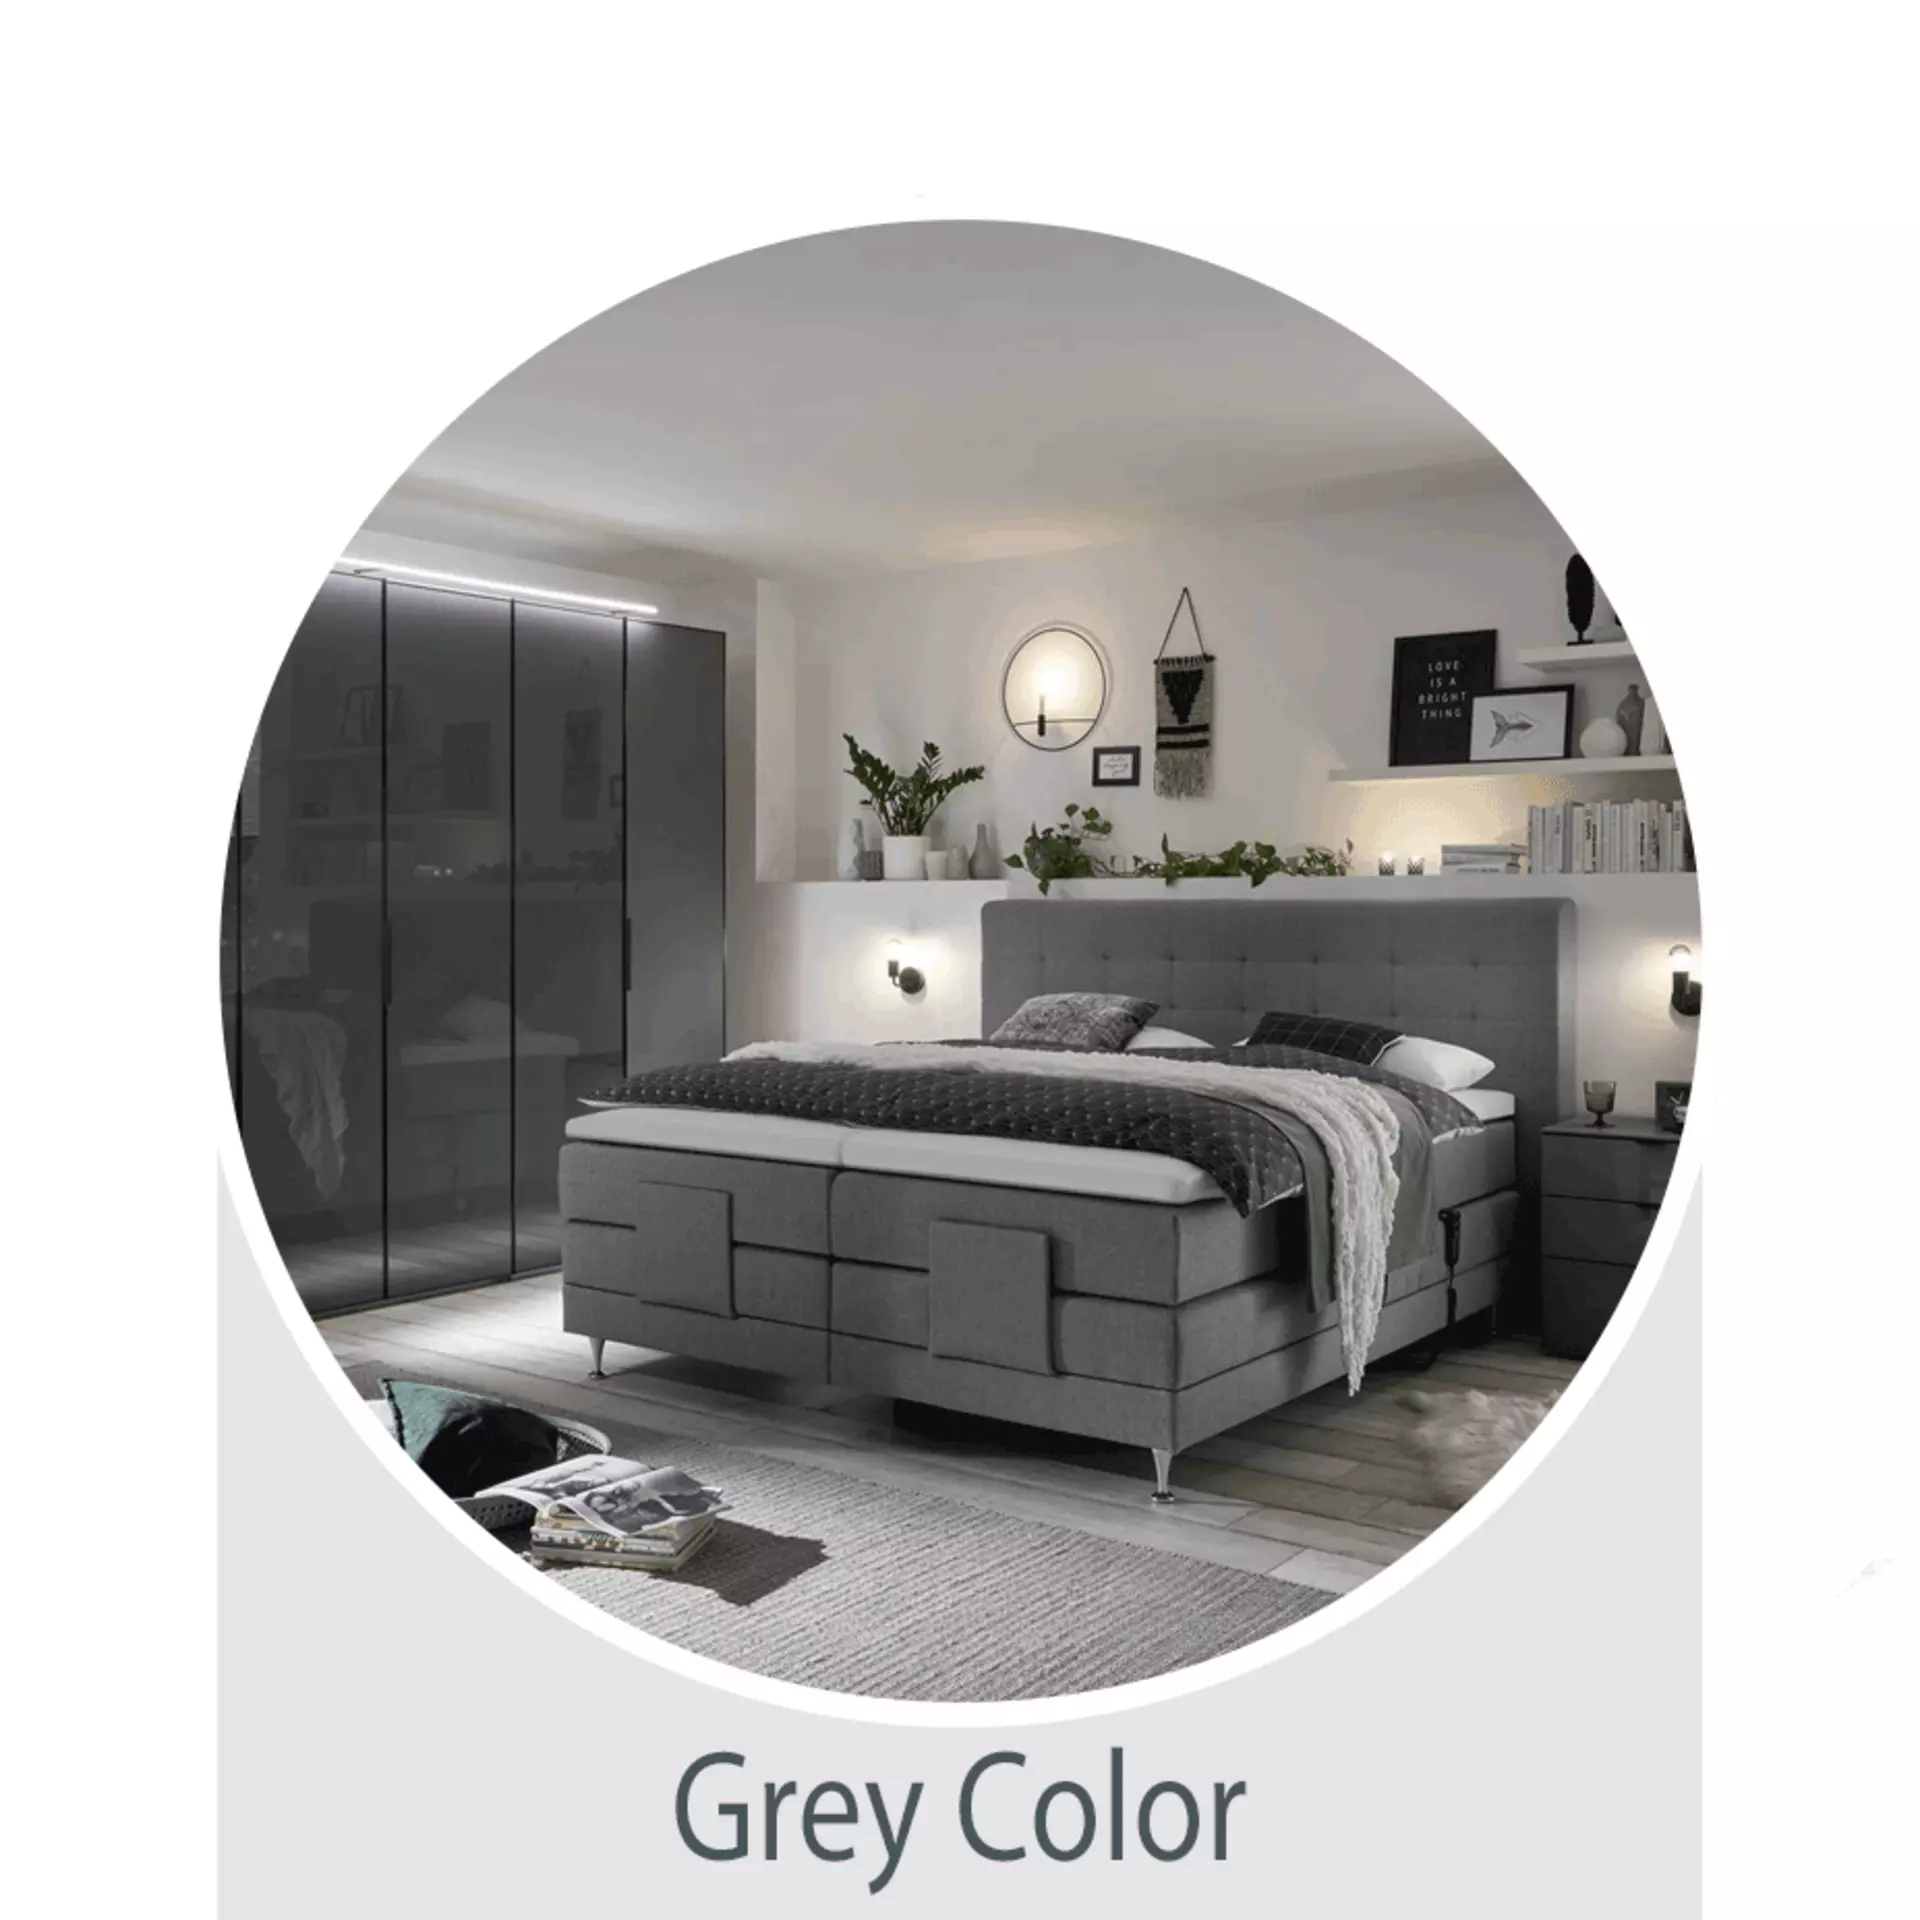 Der Wohntrend Grey Color - jetzt bei Möbel Inhofer entdecken und inspirieren lassen